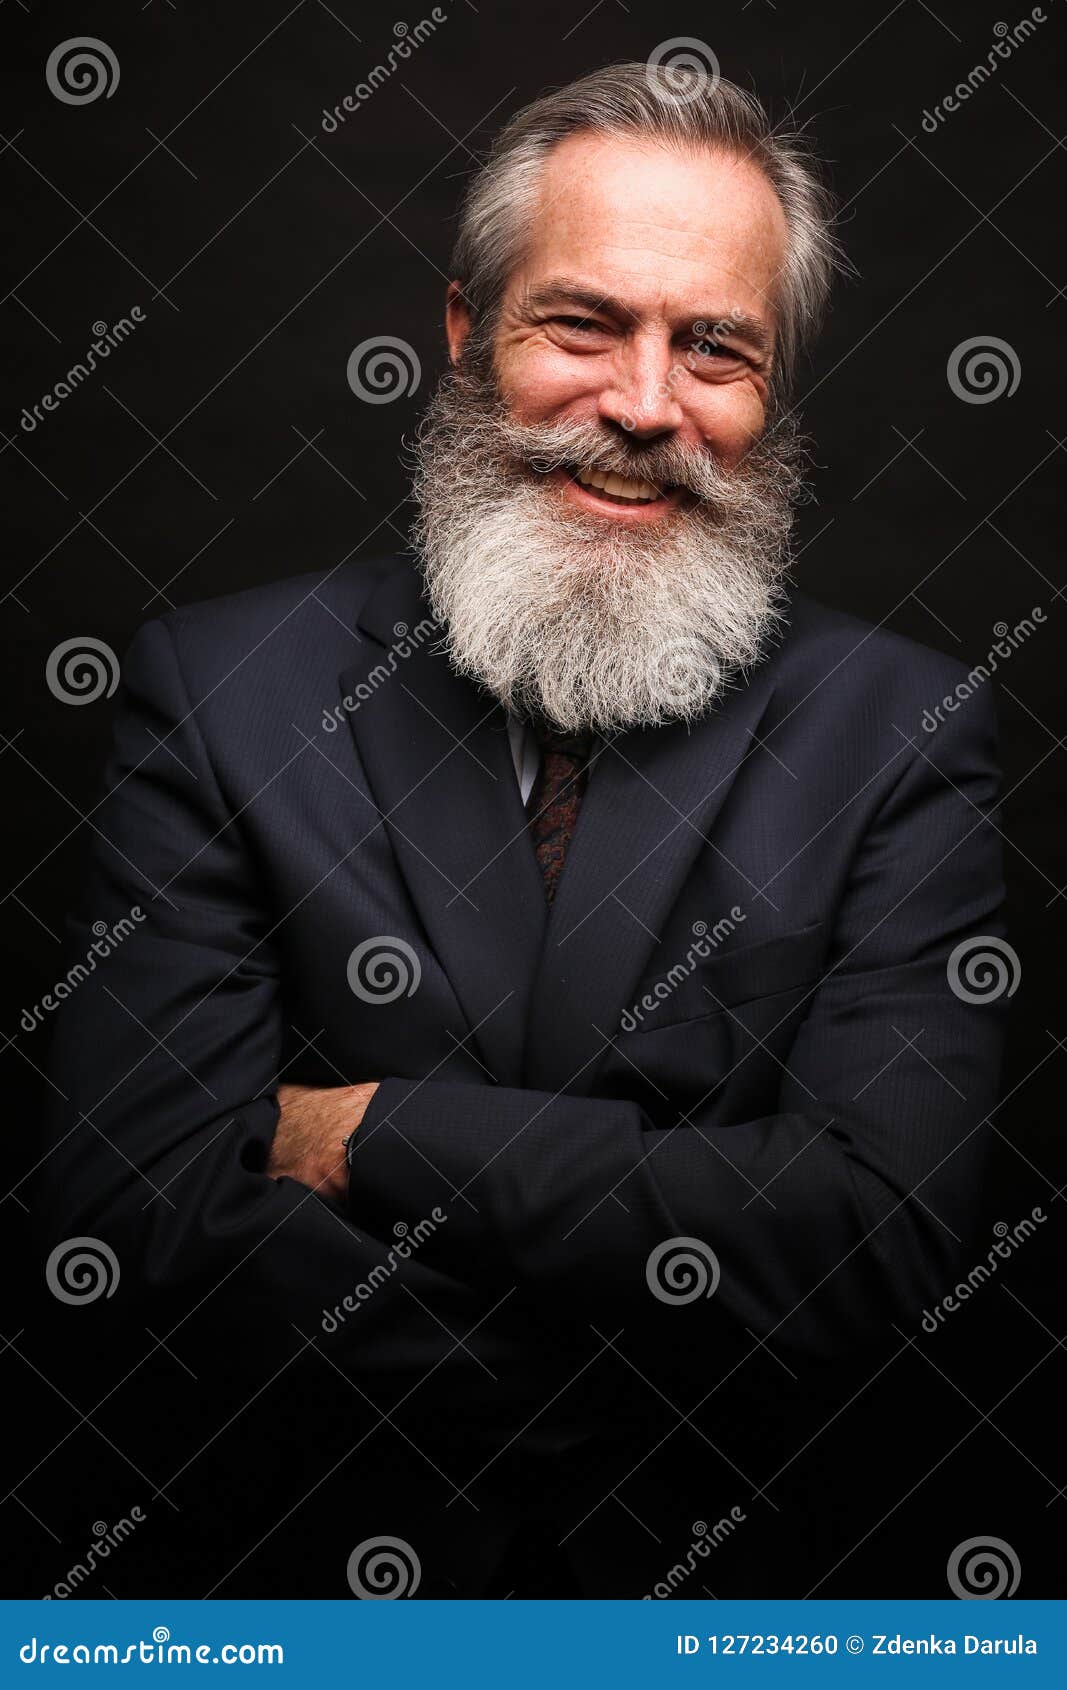 胡子肌肉大叔。胸毛真的很性感。这种成熟款应该很多人爱吧？图